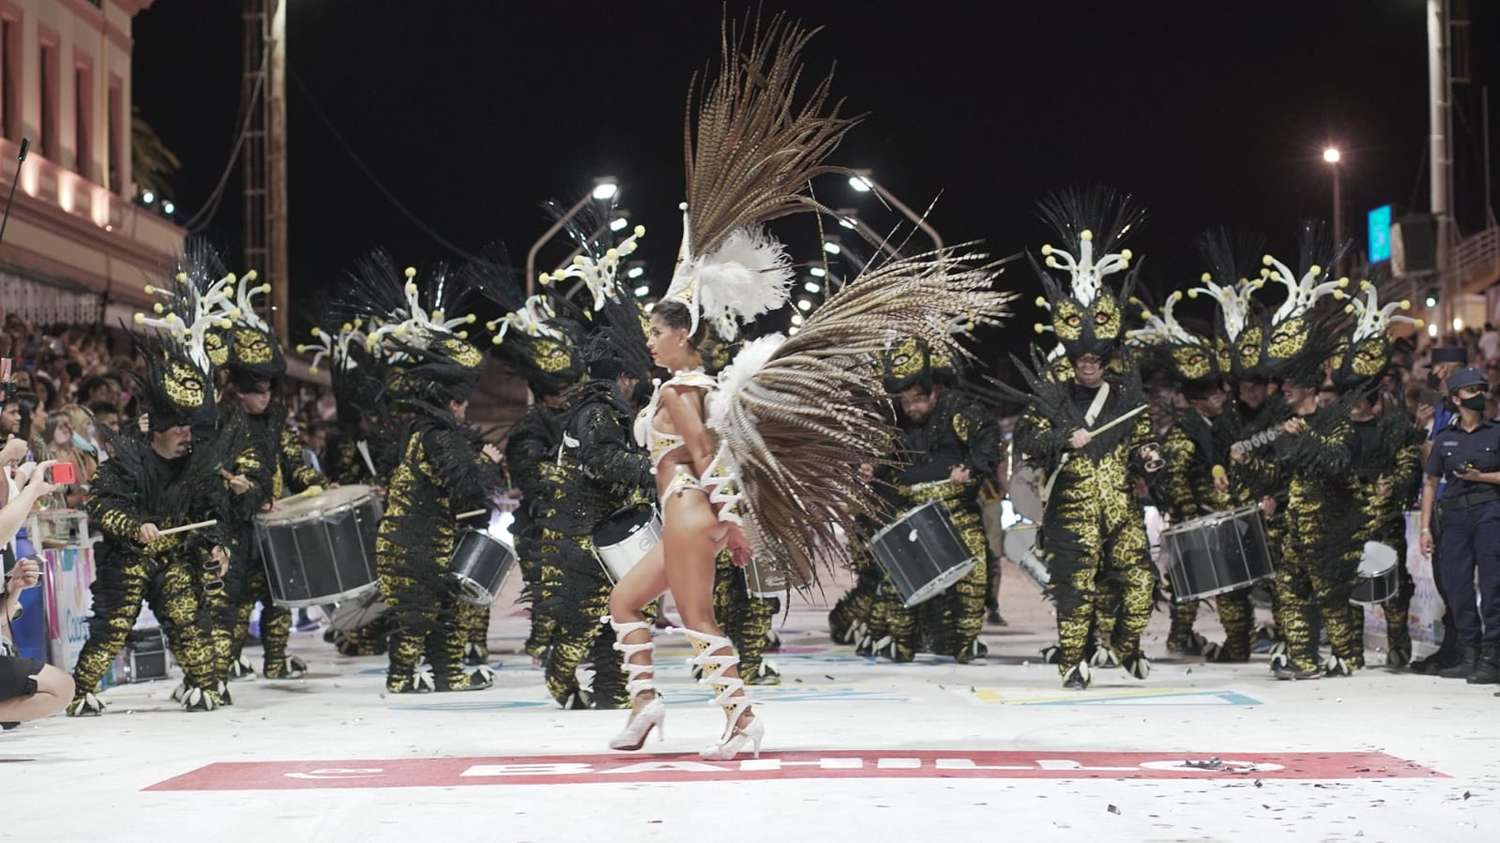 El Carnaval del País vuelve a desafiar al mal tiempo y prepara una sexta noche espectacular